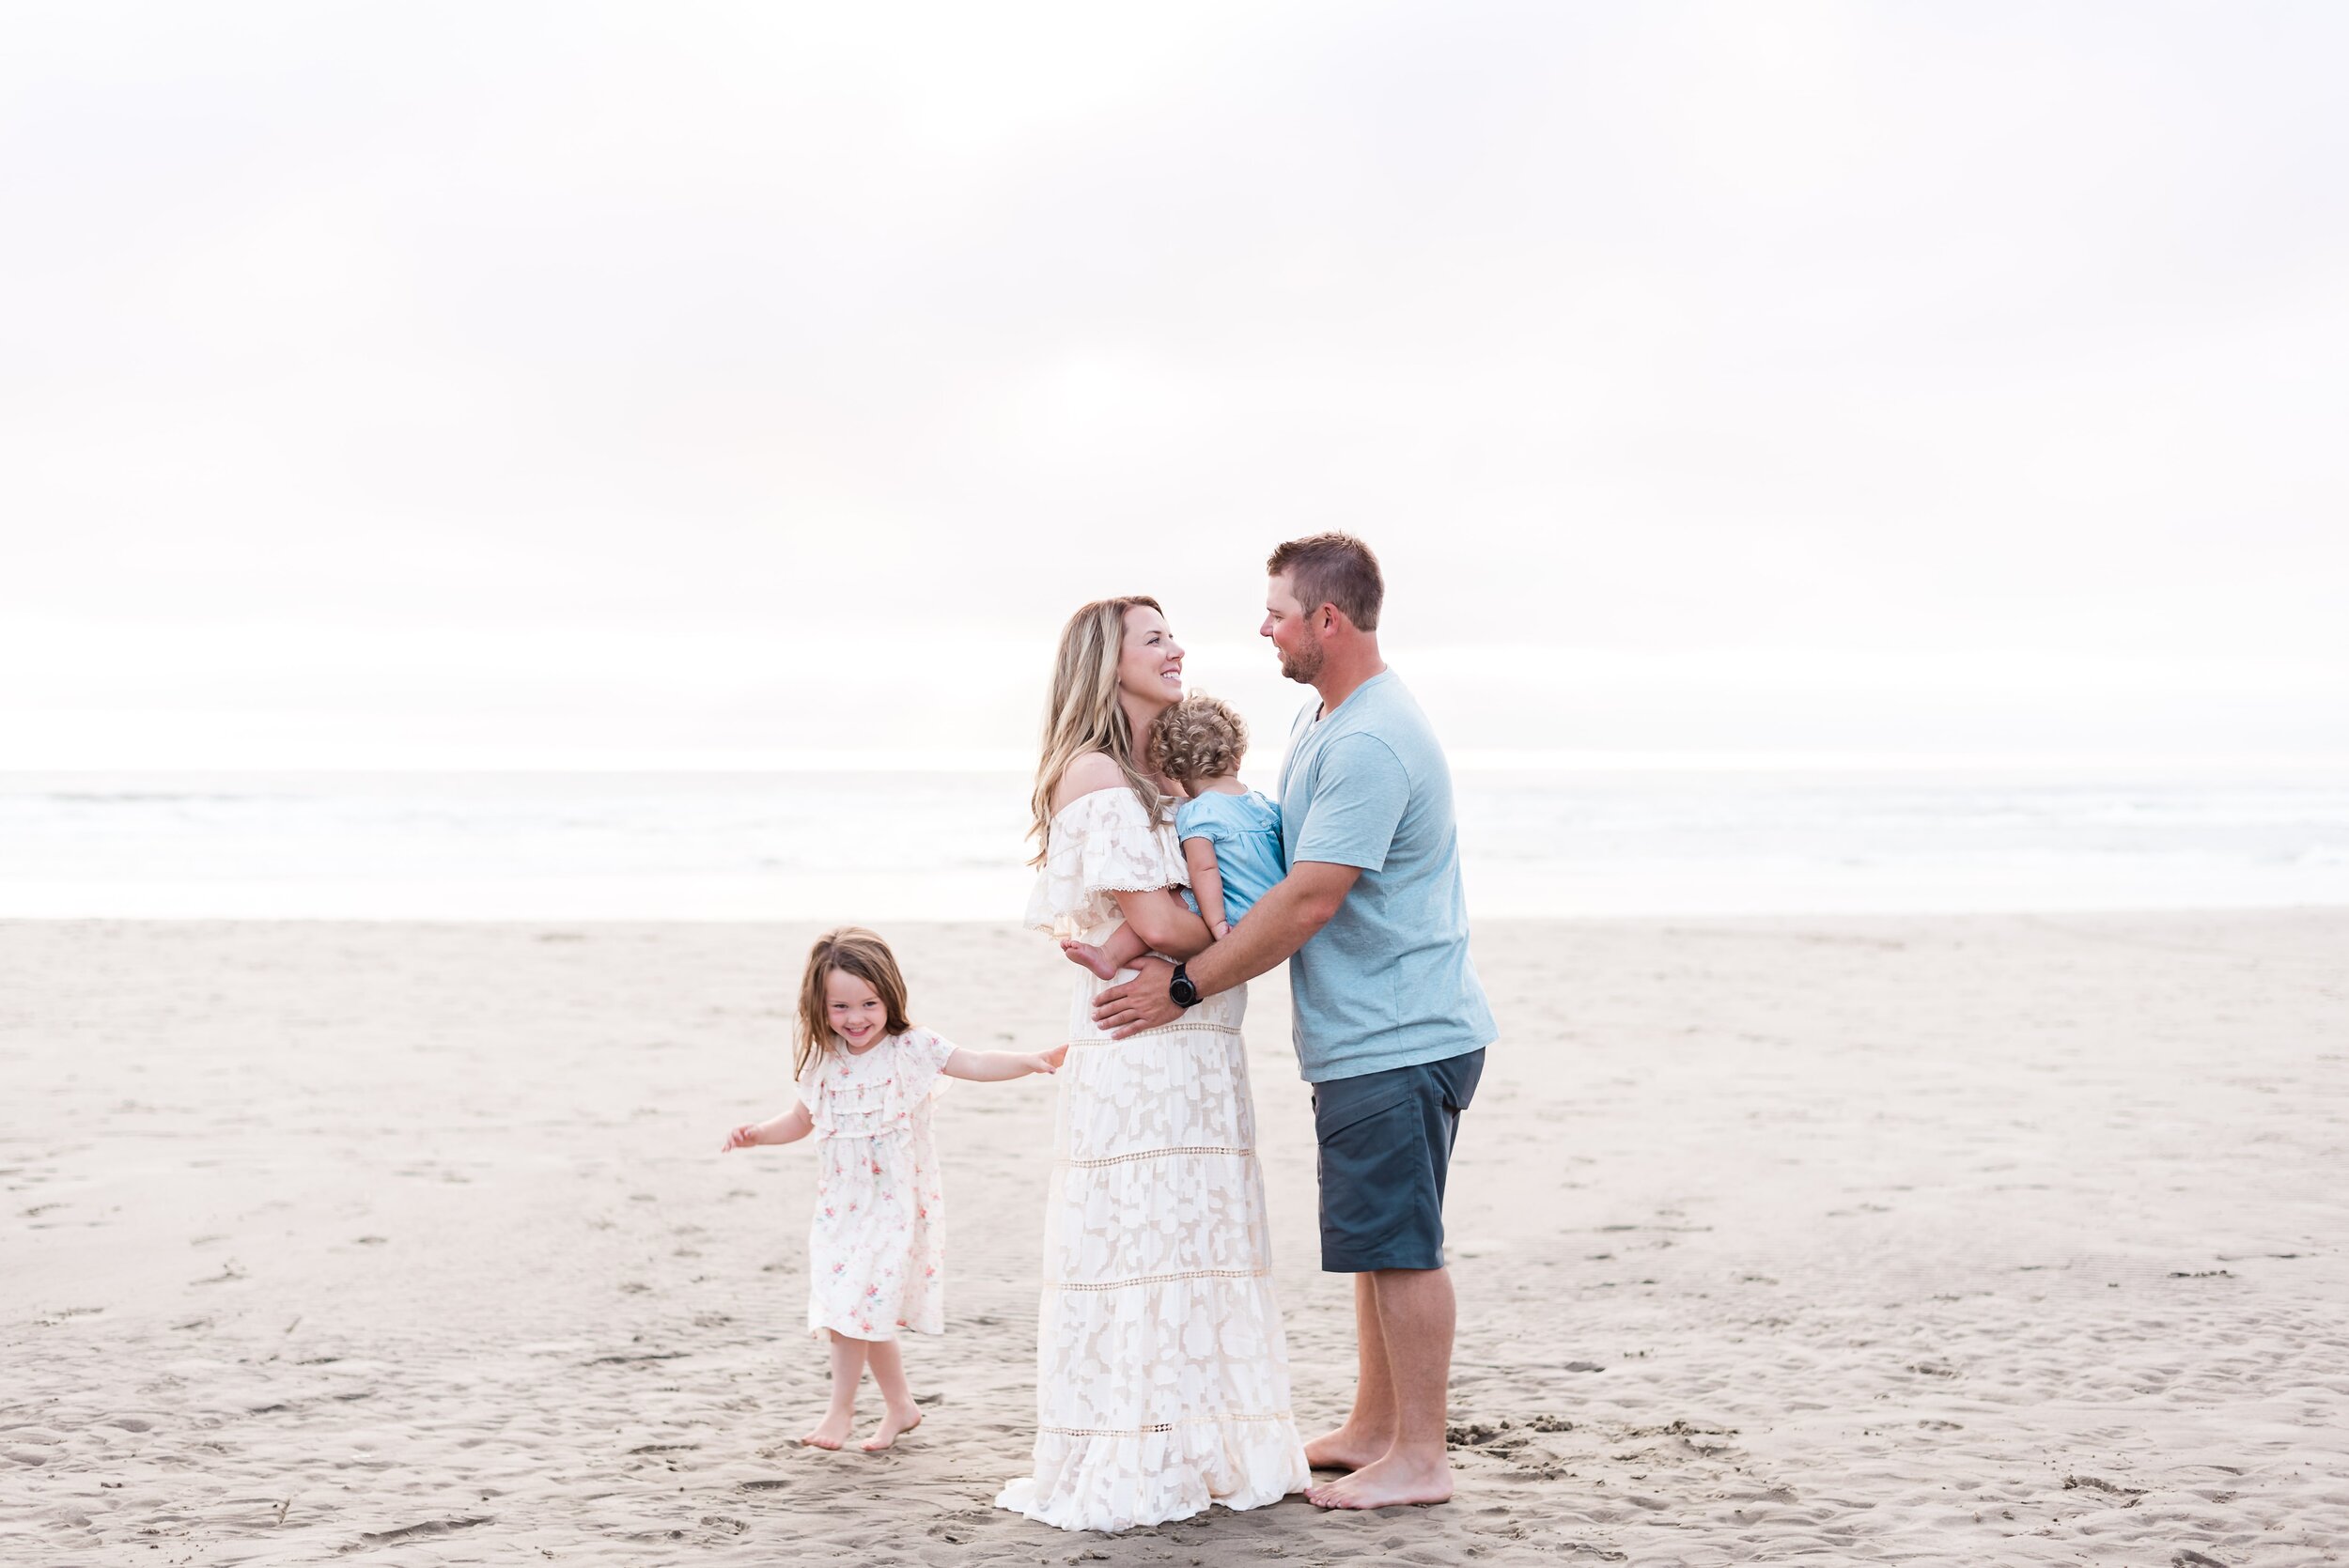 Oregon Coast family photographers - Elizabeth Hite Photography 25